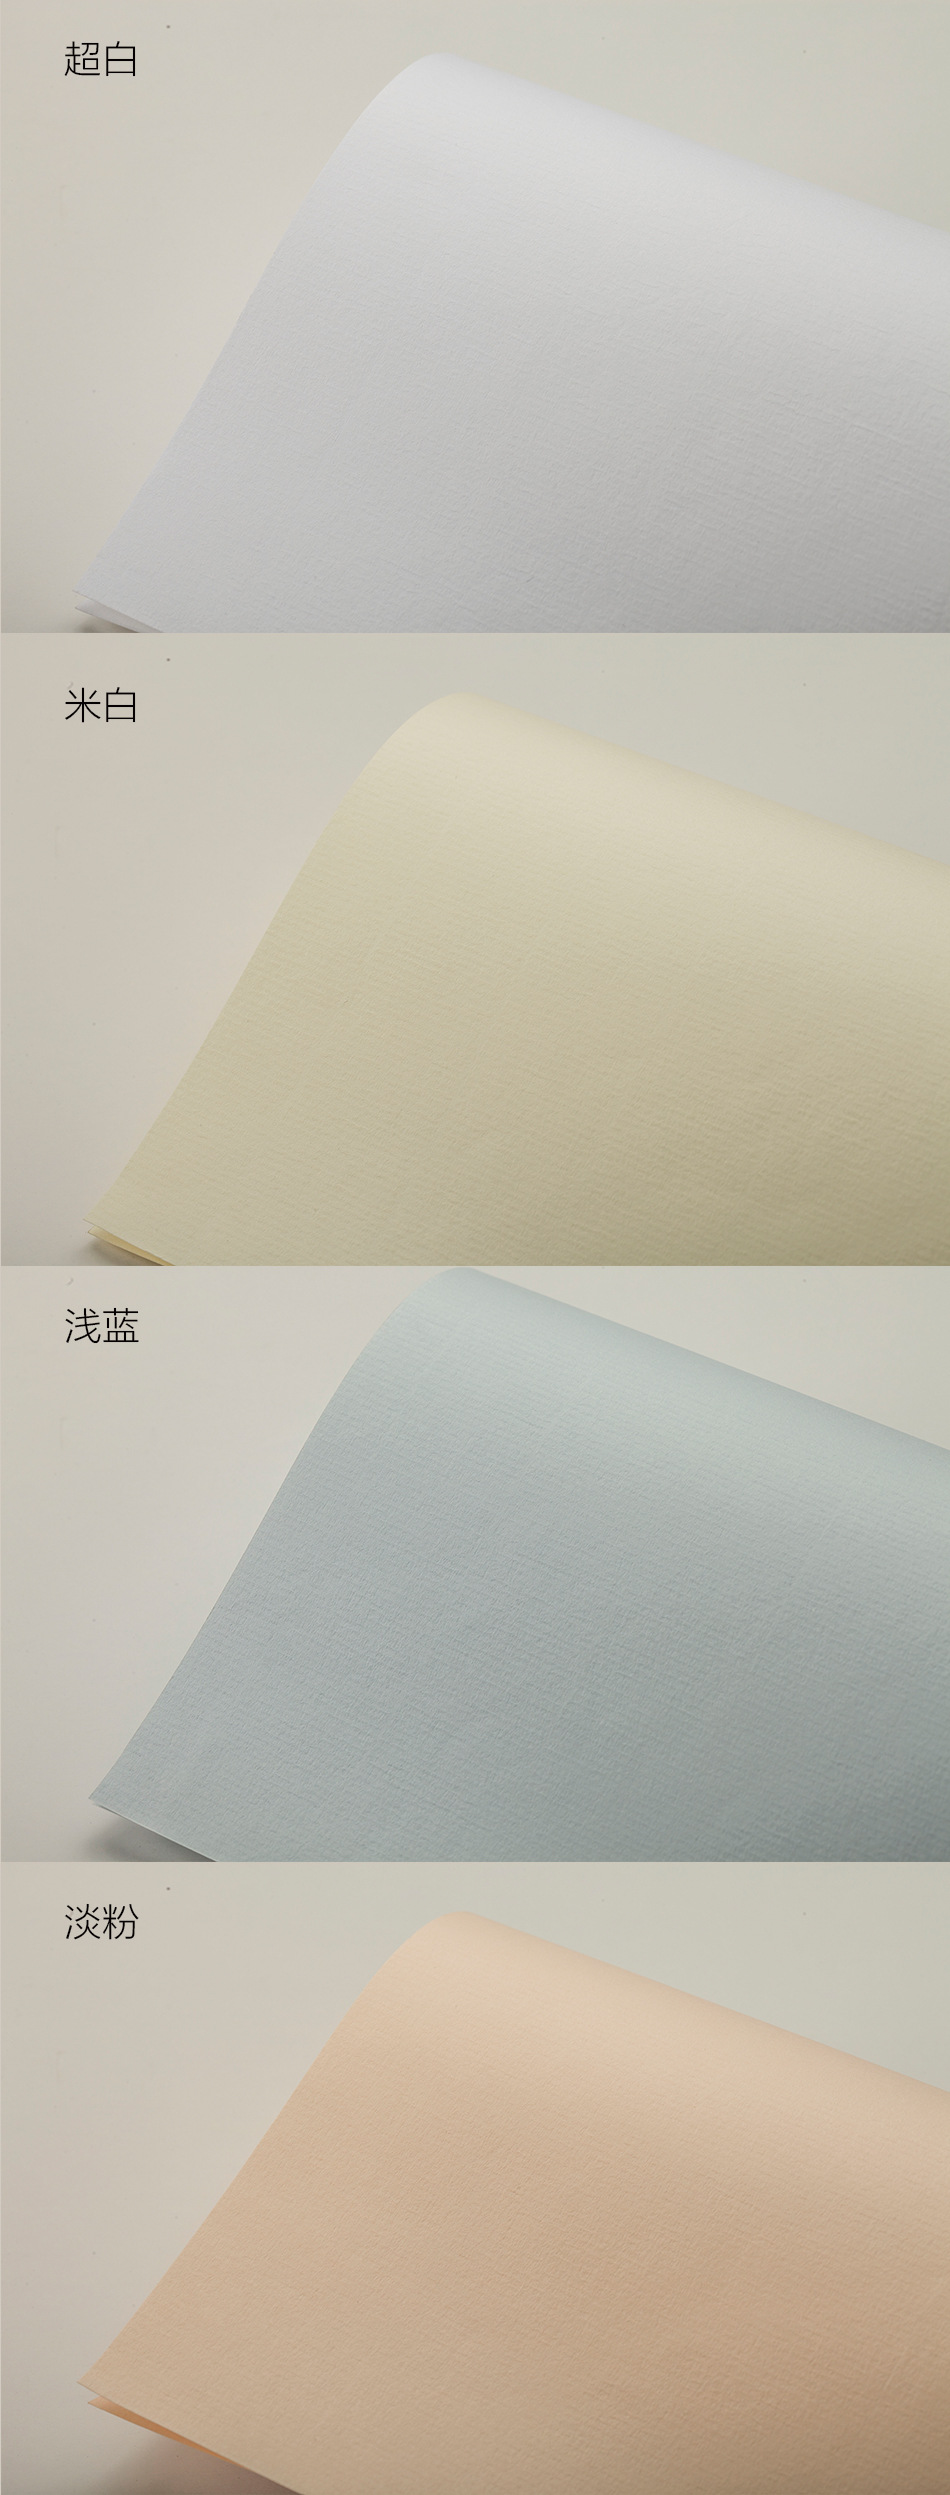 水印水纹纸 定位水纹纸 艺术办公用纸